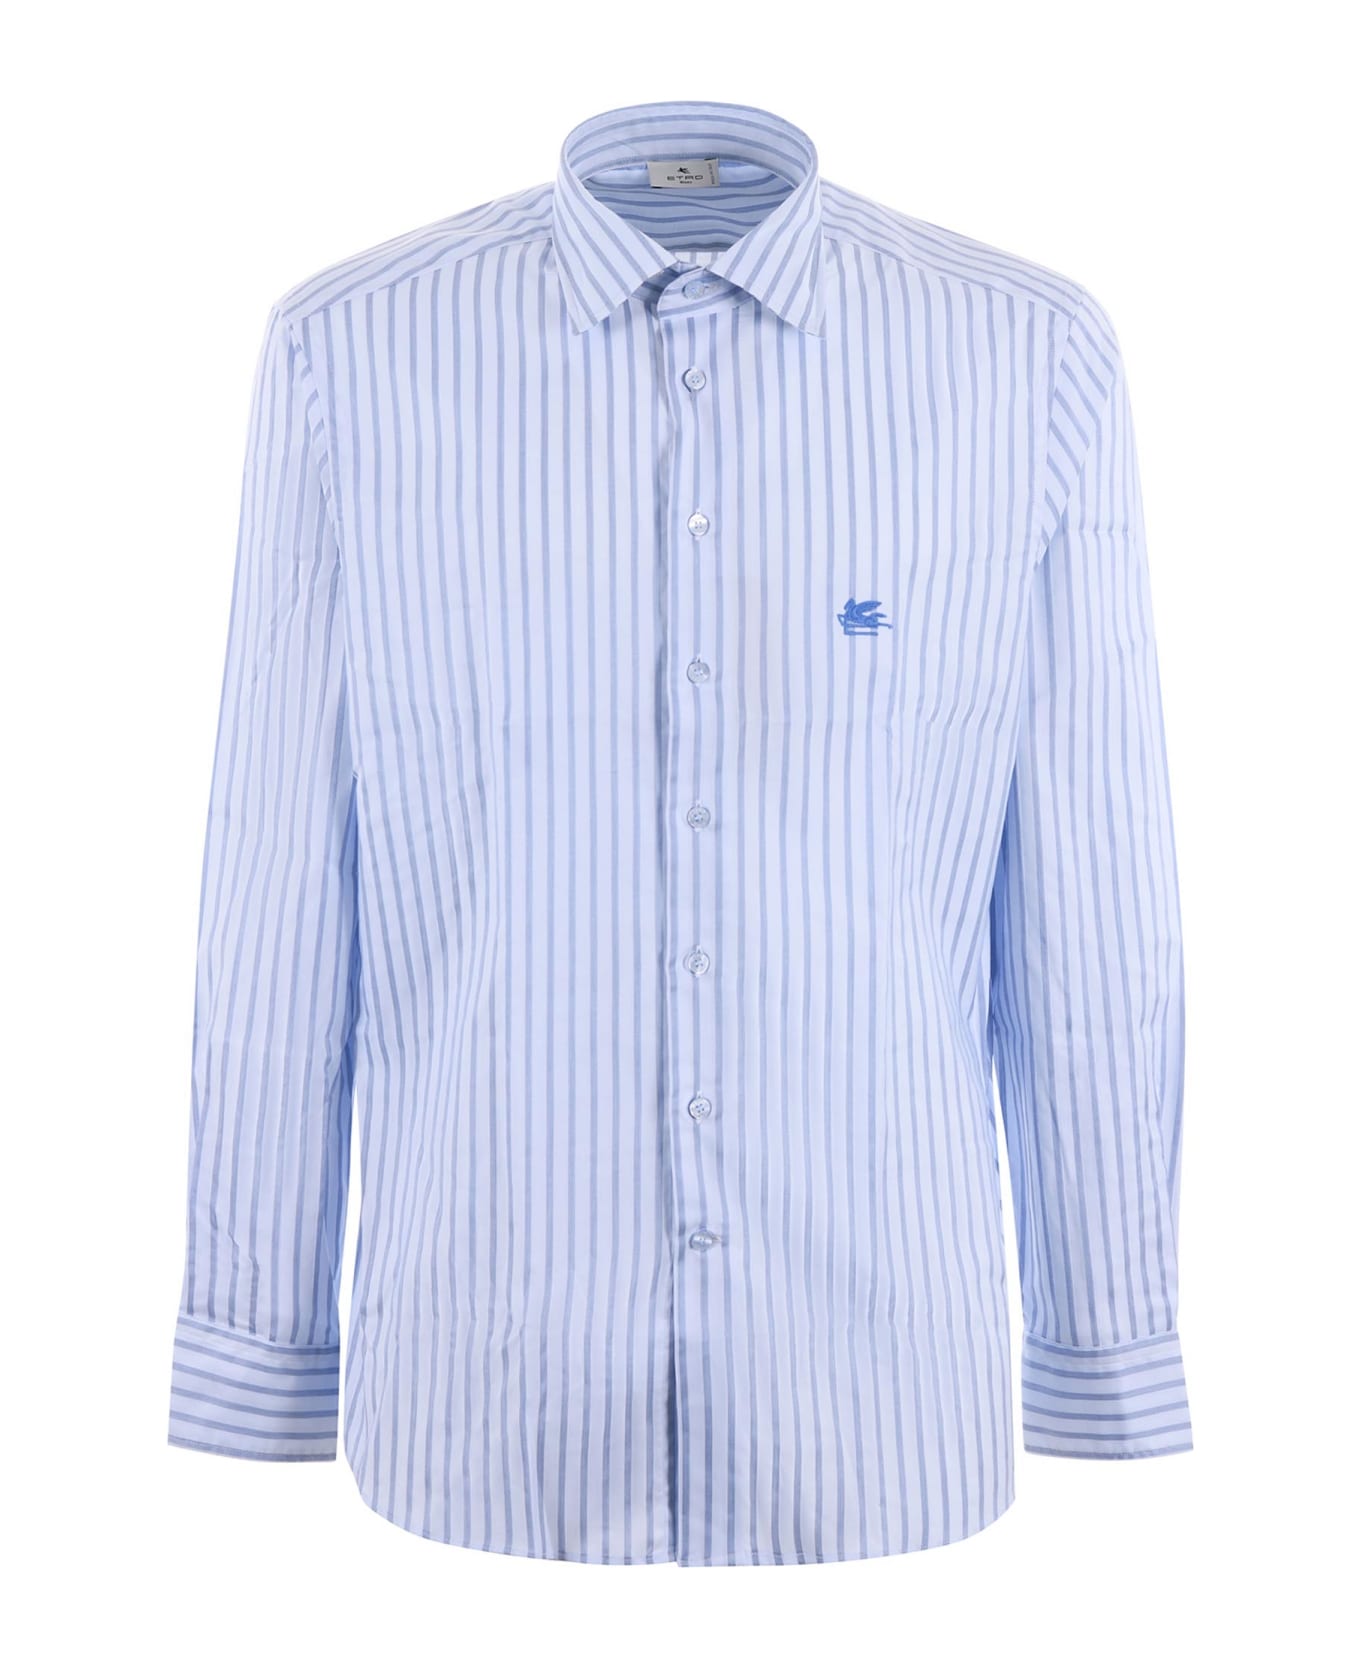 Etro White\/light Blue Striped Long Sleeved Shirt - Celeste